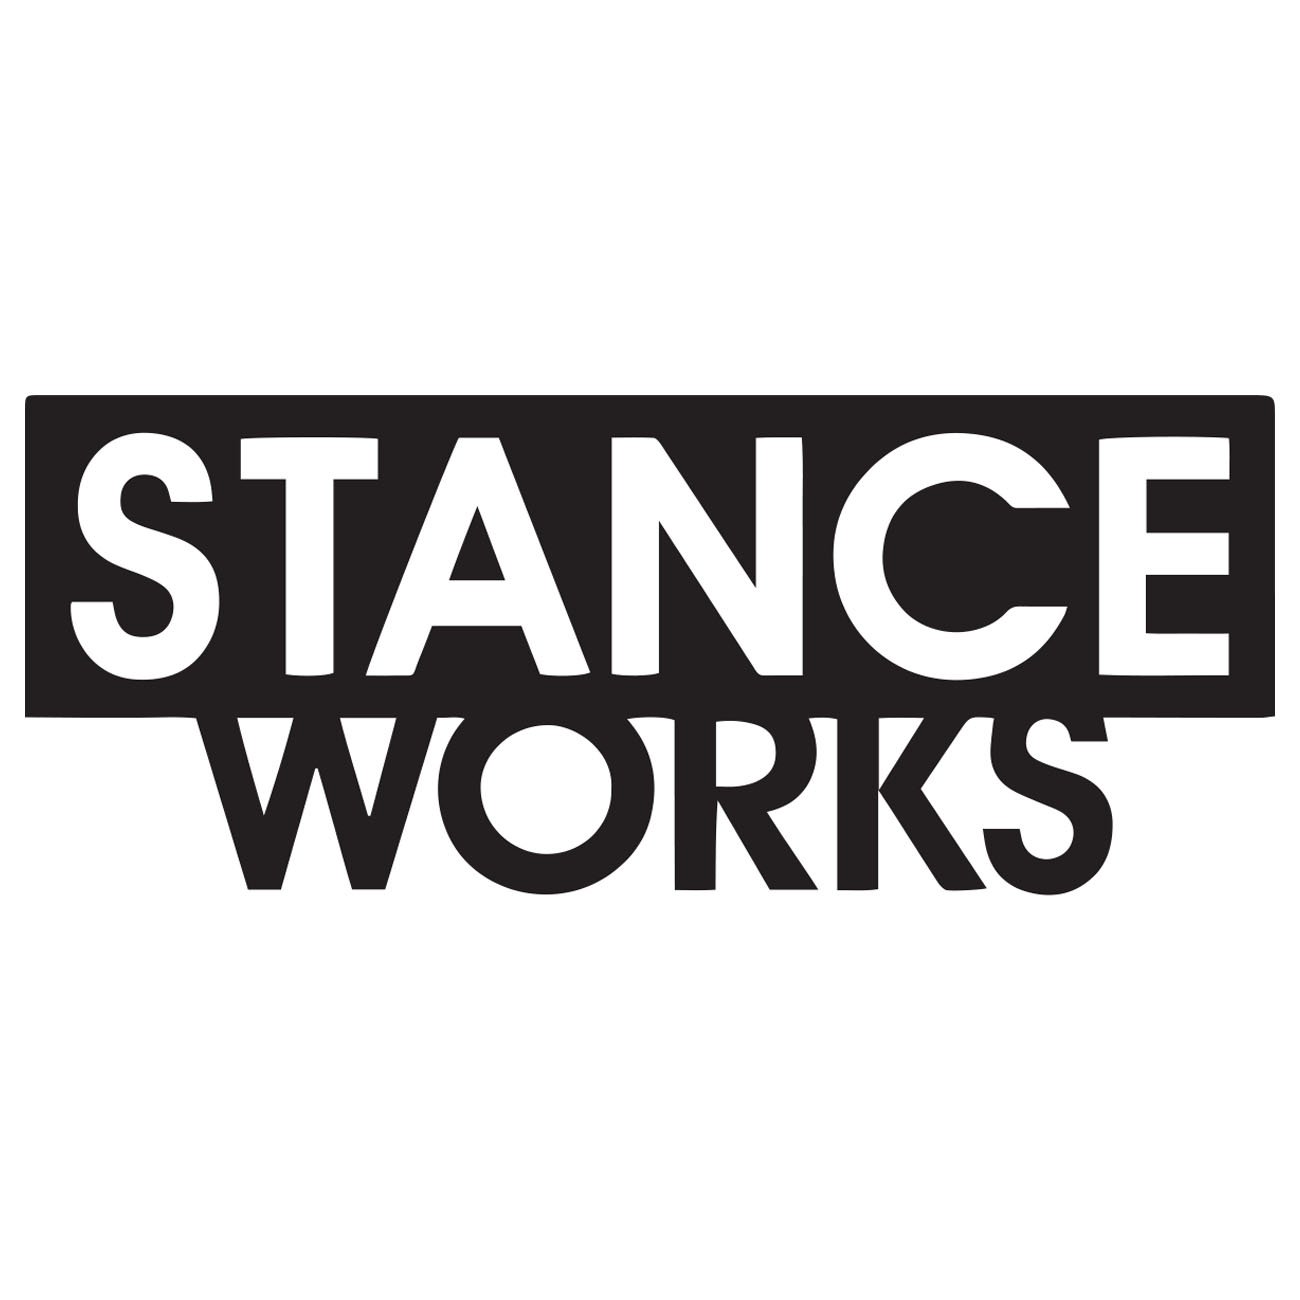 Stance Works logo 2